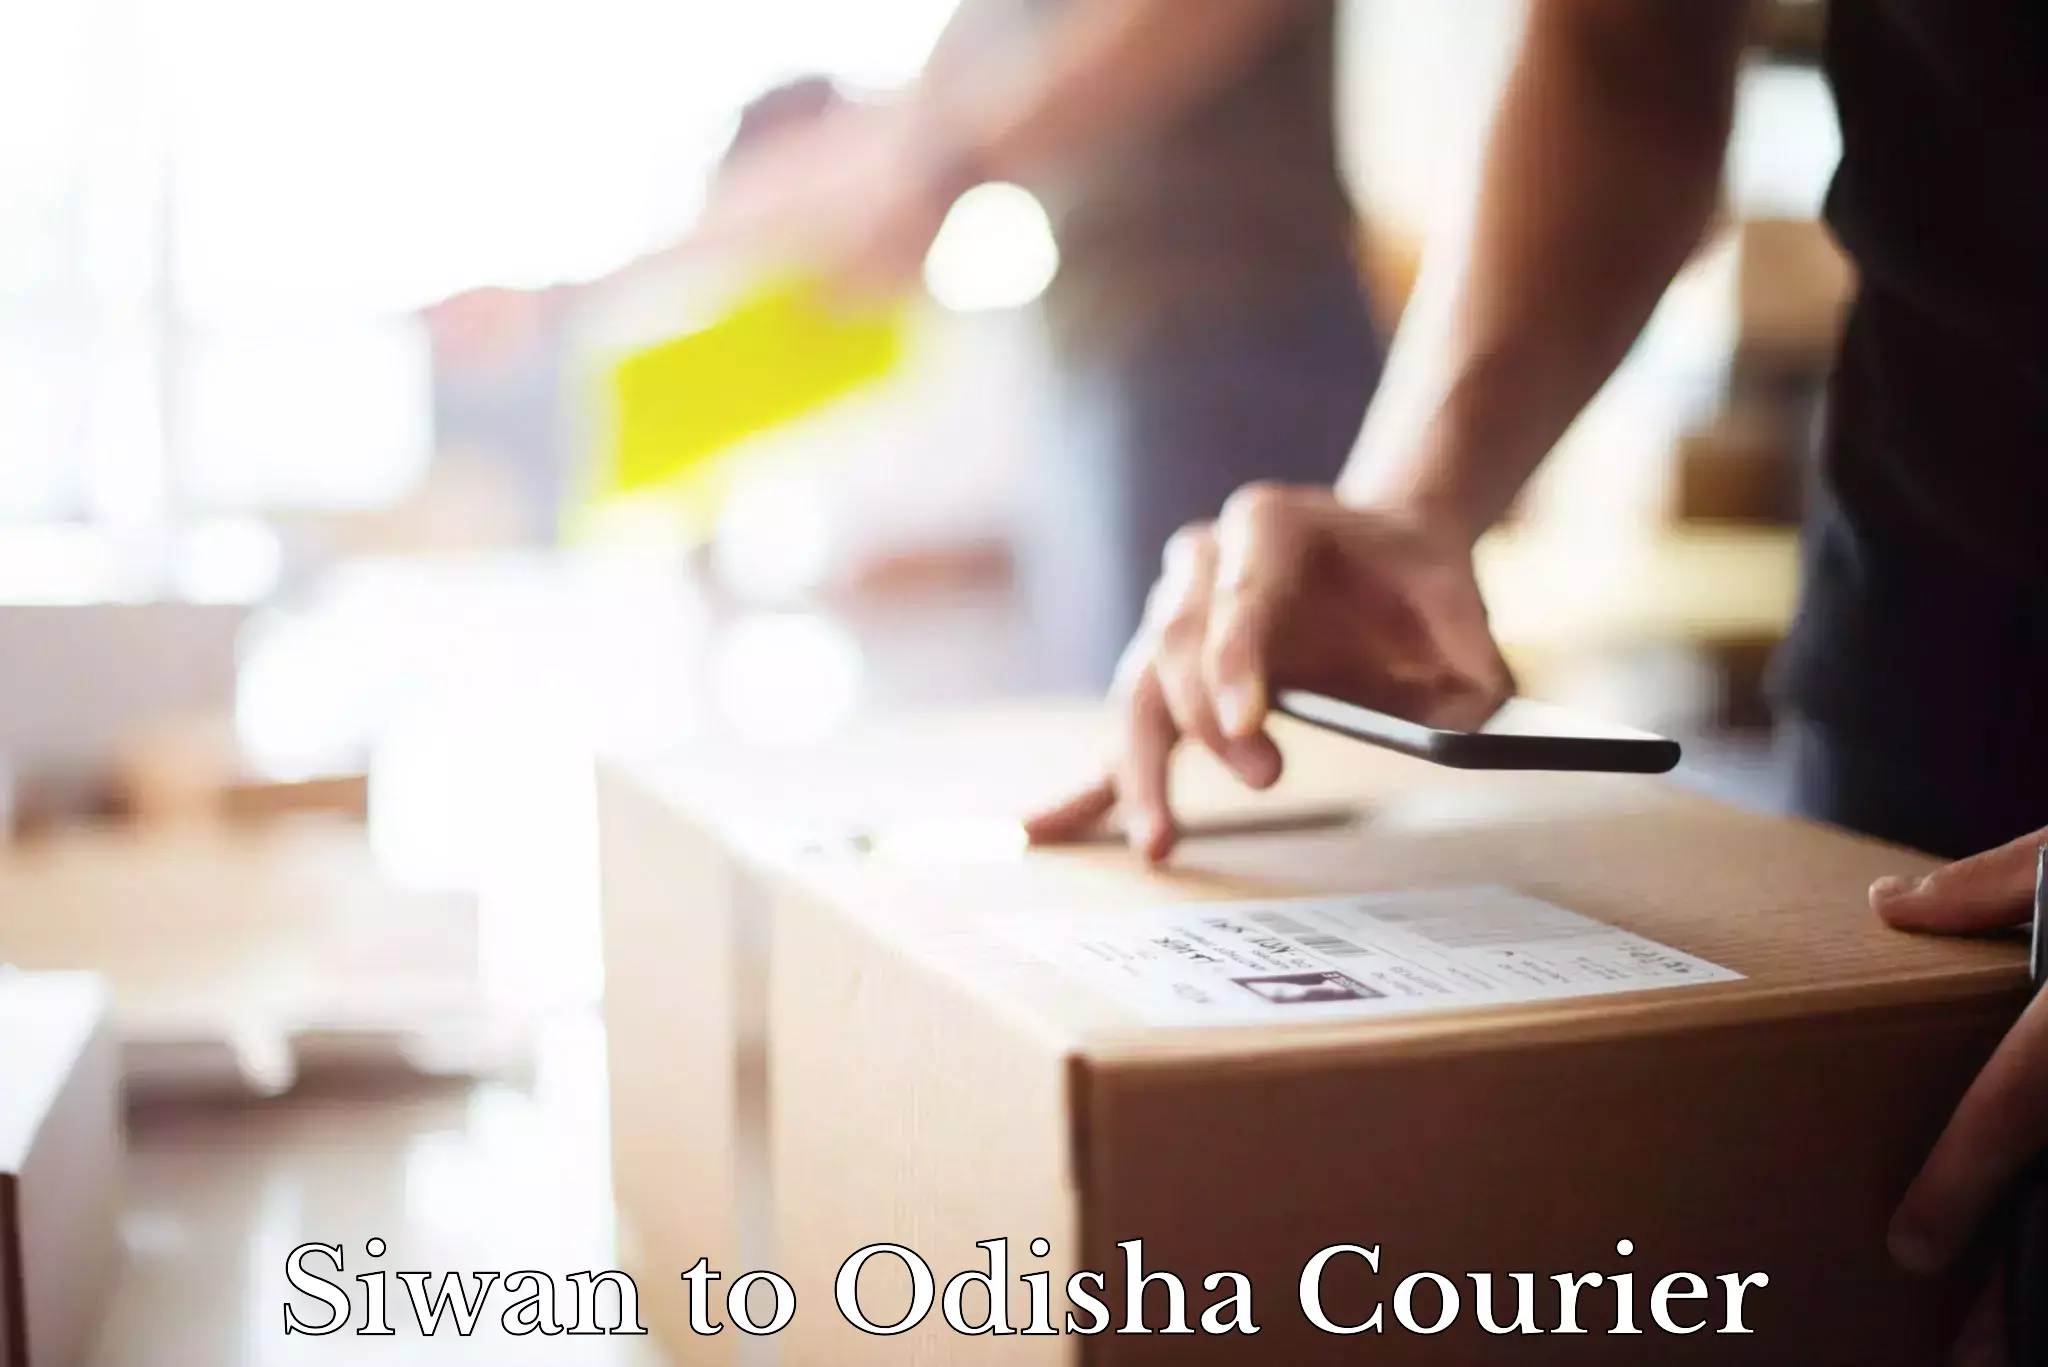 Efficient shipping platforms Siwan to Odisha